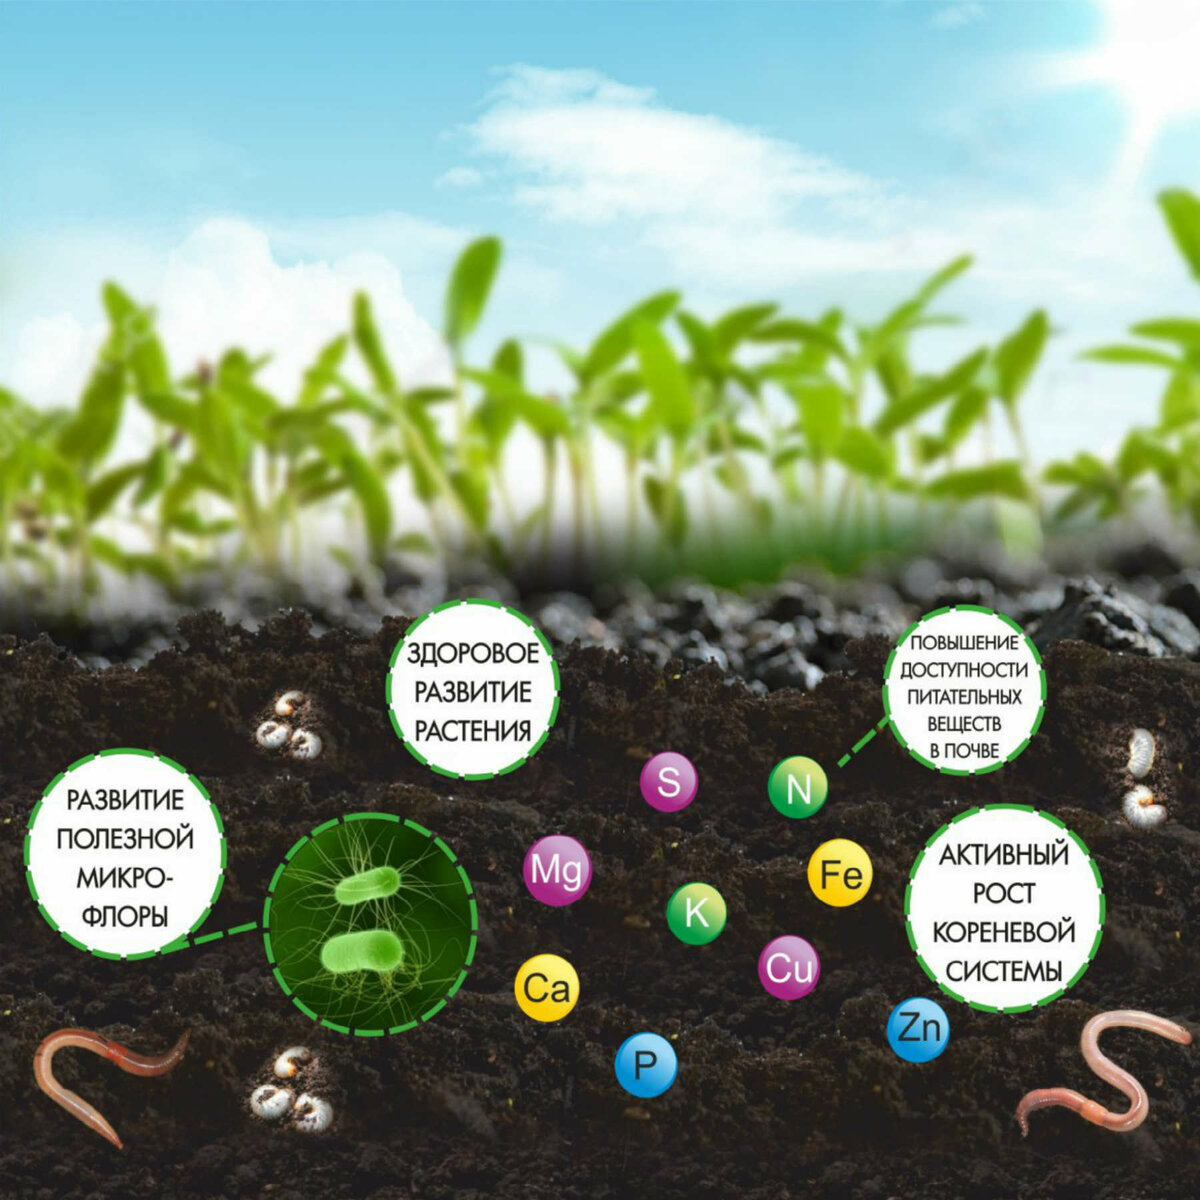 Роль органических удобрений в улучшении почвы для культурных растений